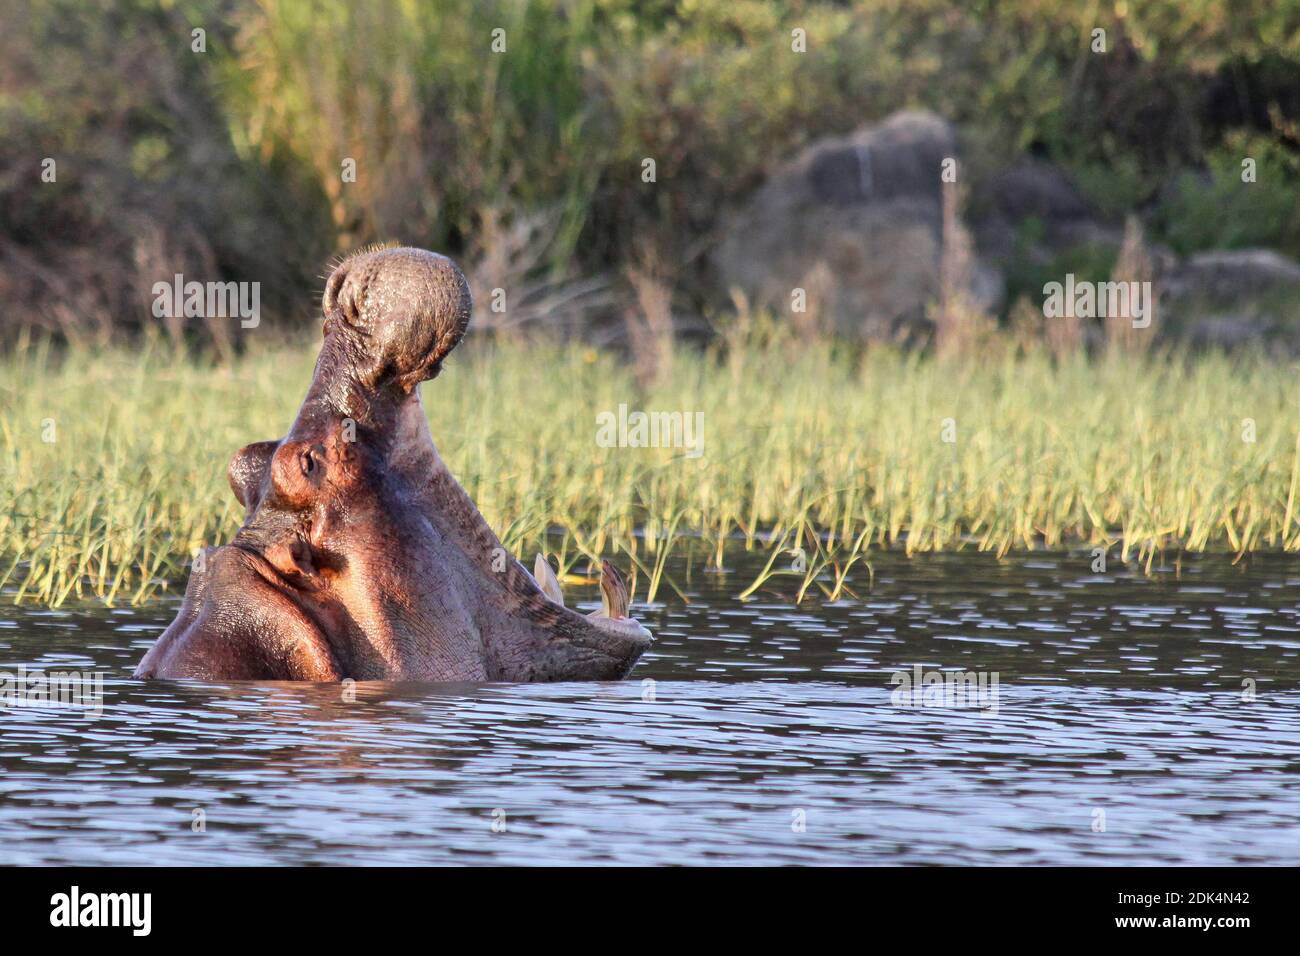 Hippopotamus yawning Taken at Lake Chamo, Ethiopia Stock Photo